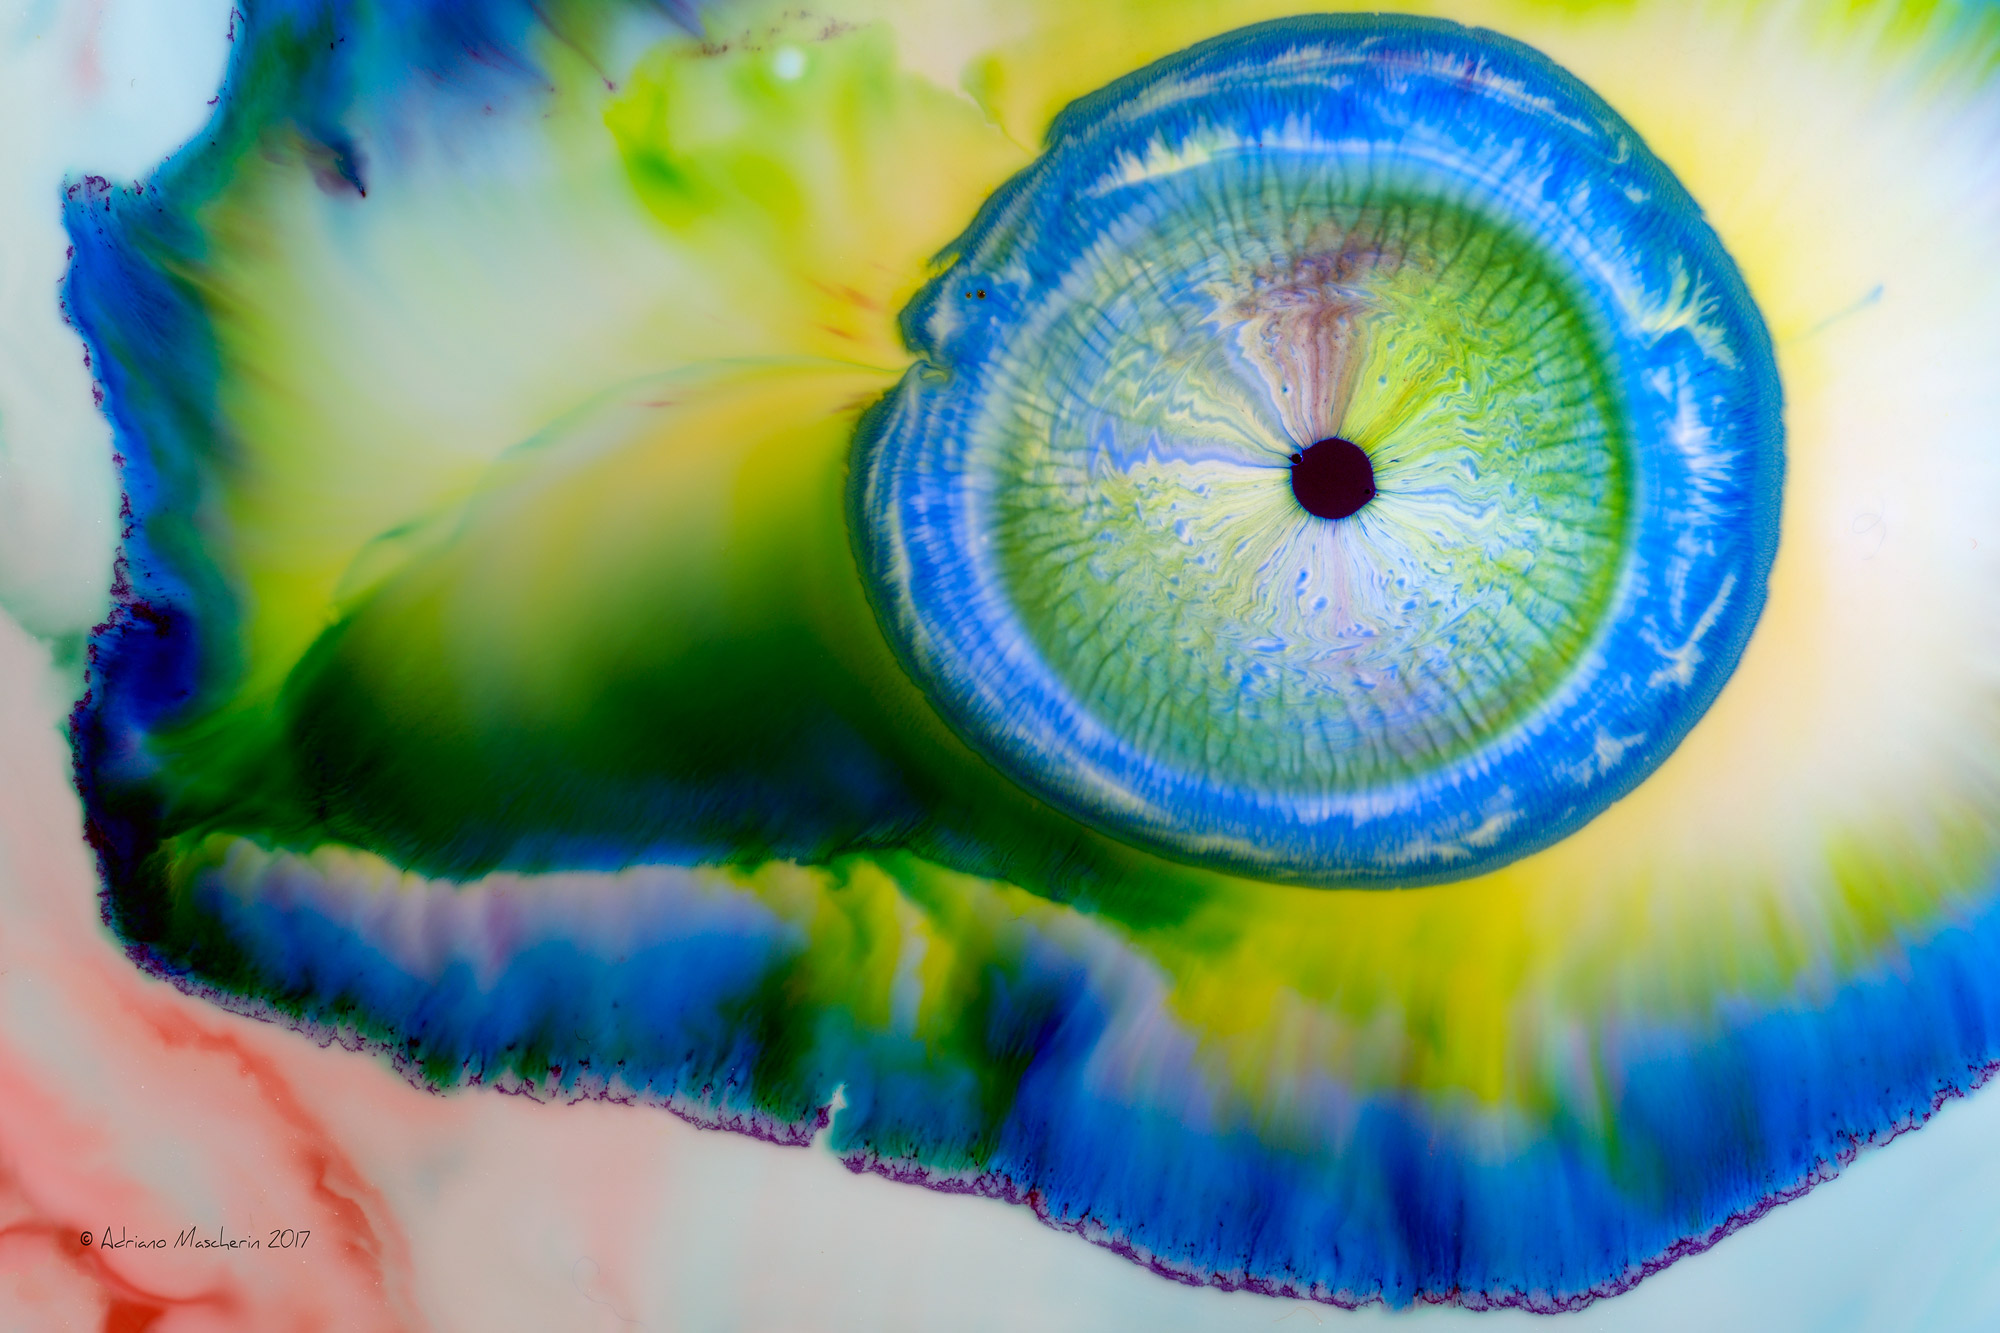 The eye of the chameleon .......